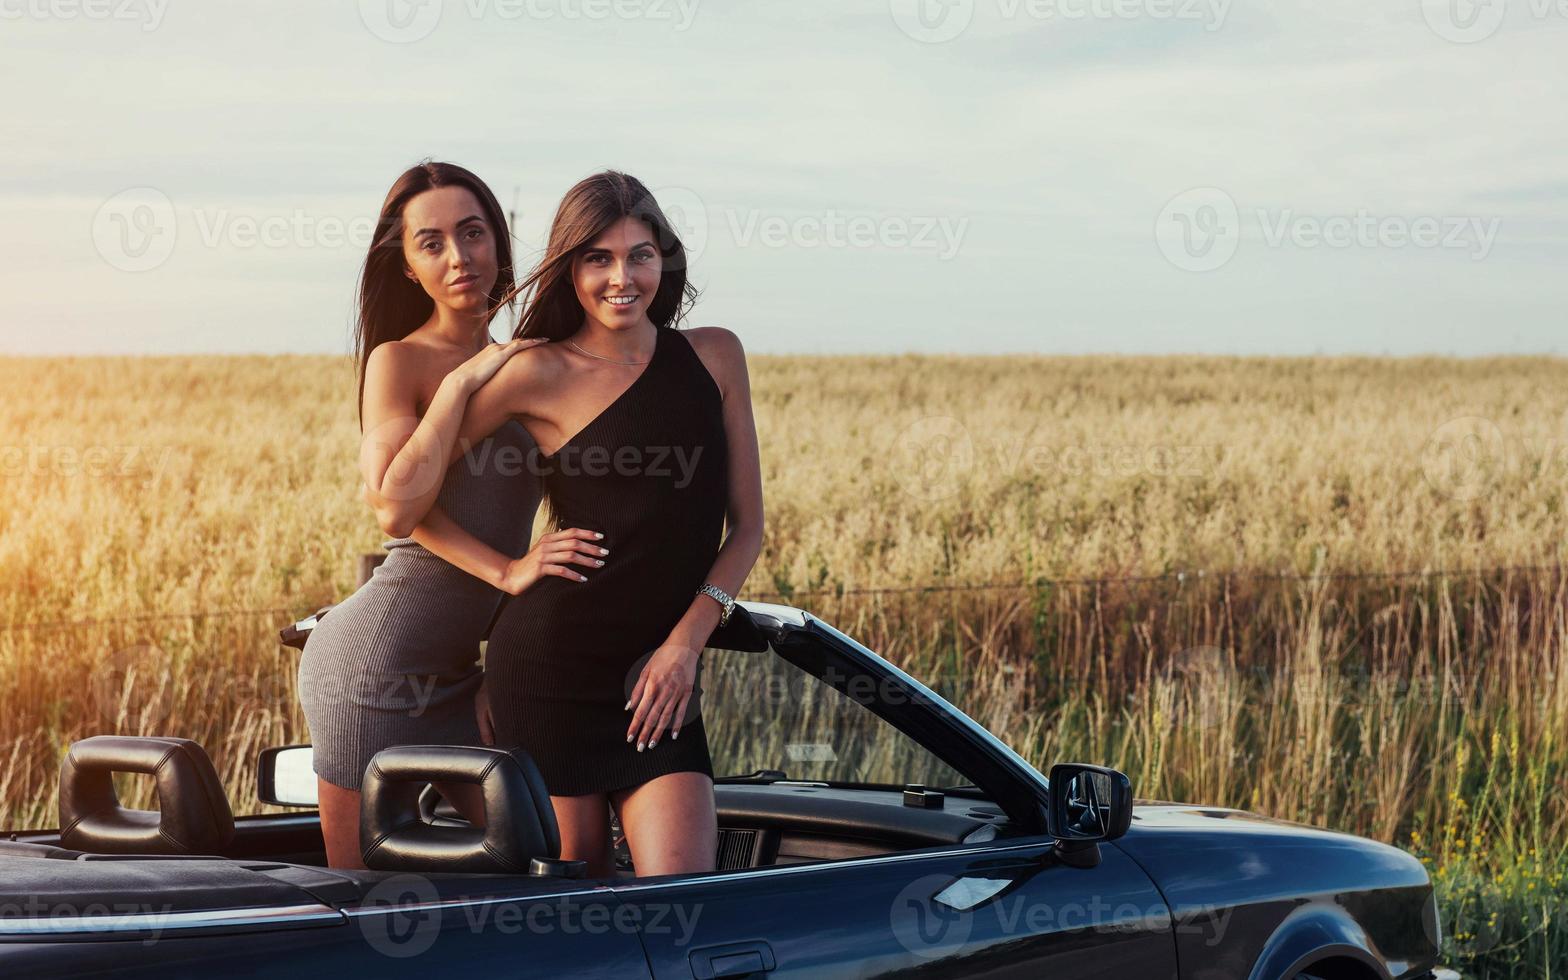 flickor poserar för kameran i en svart cabriolet foto